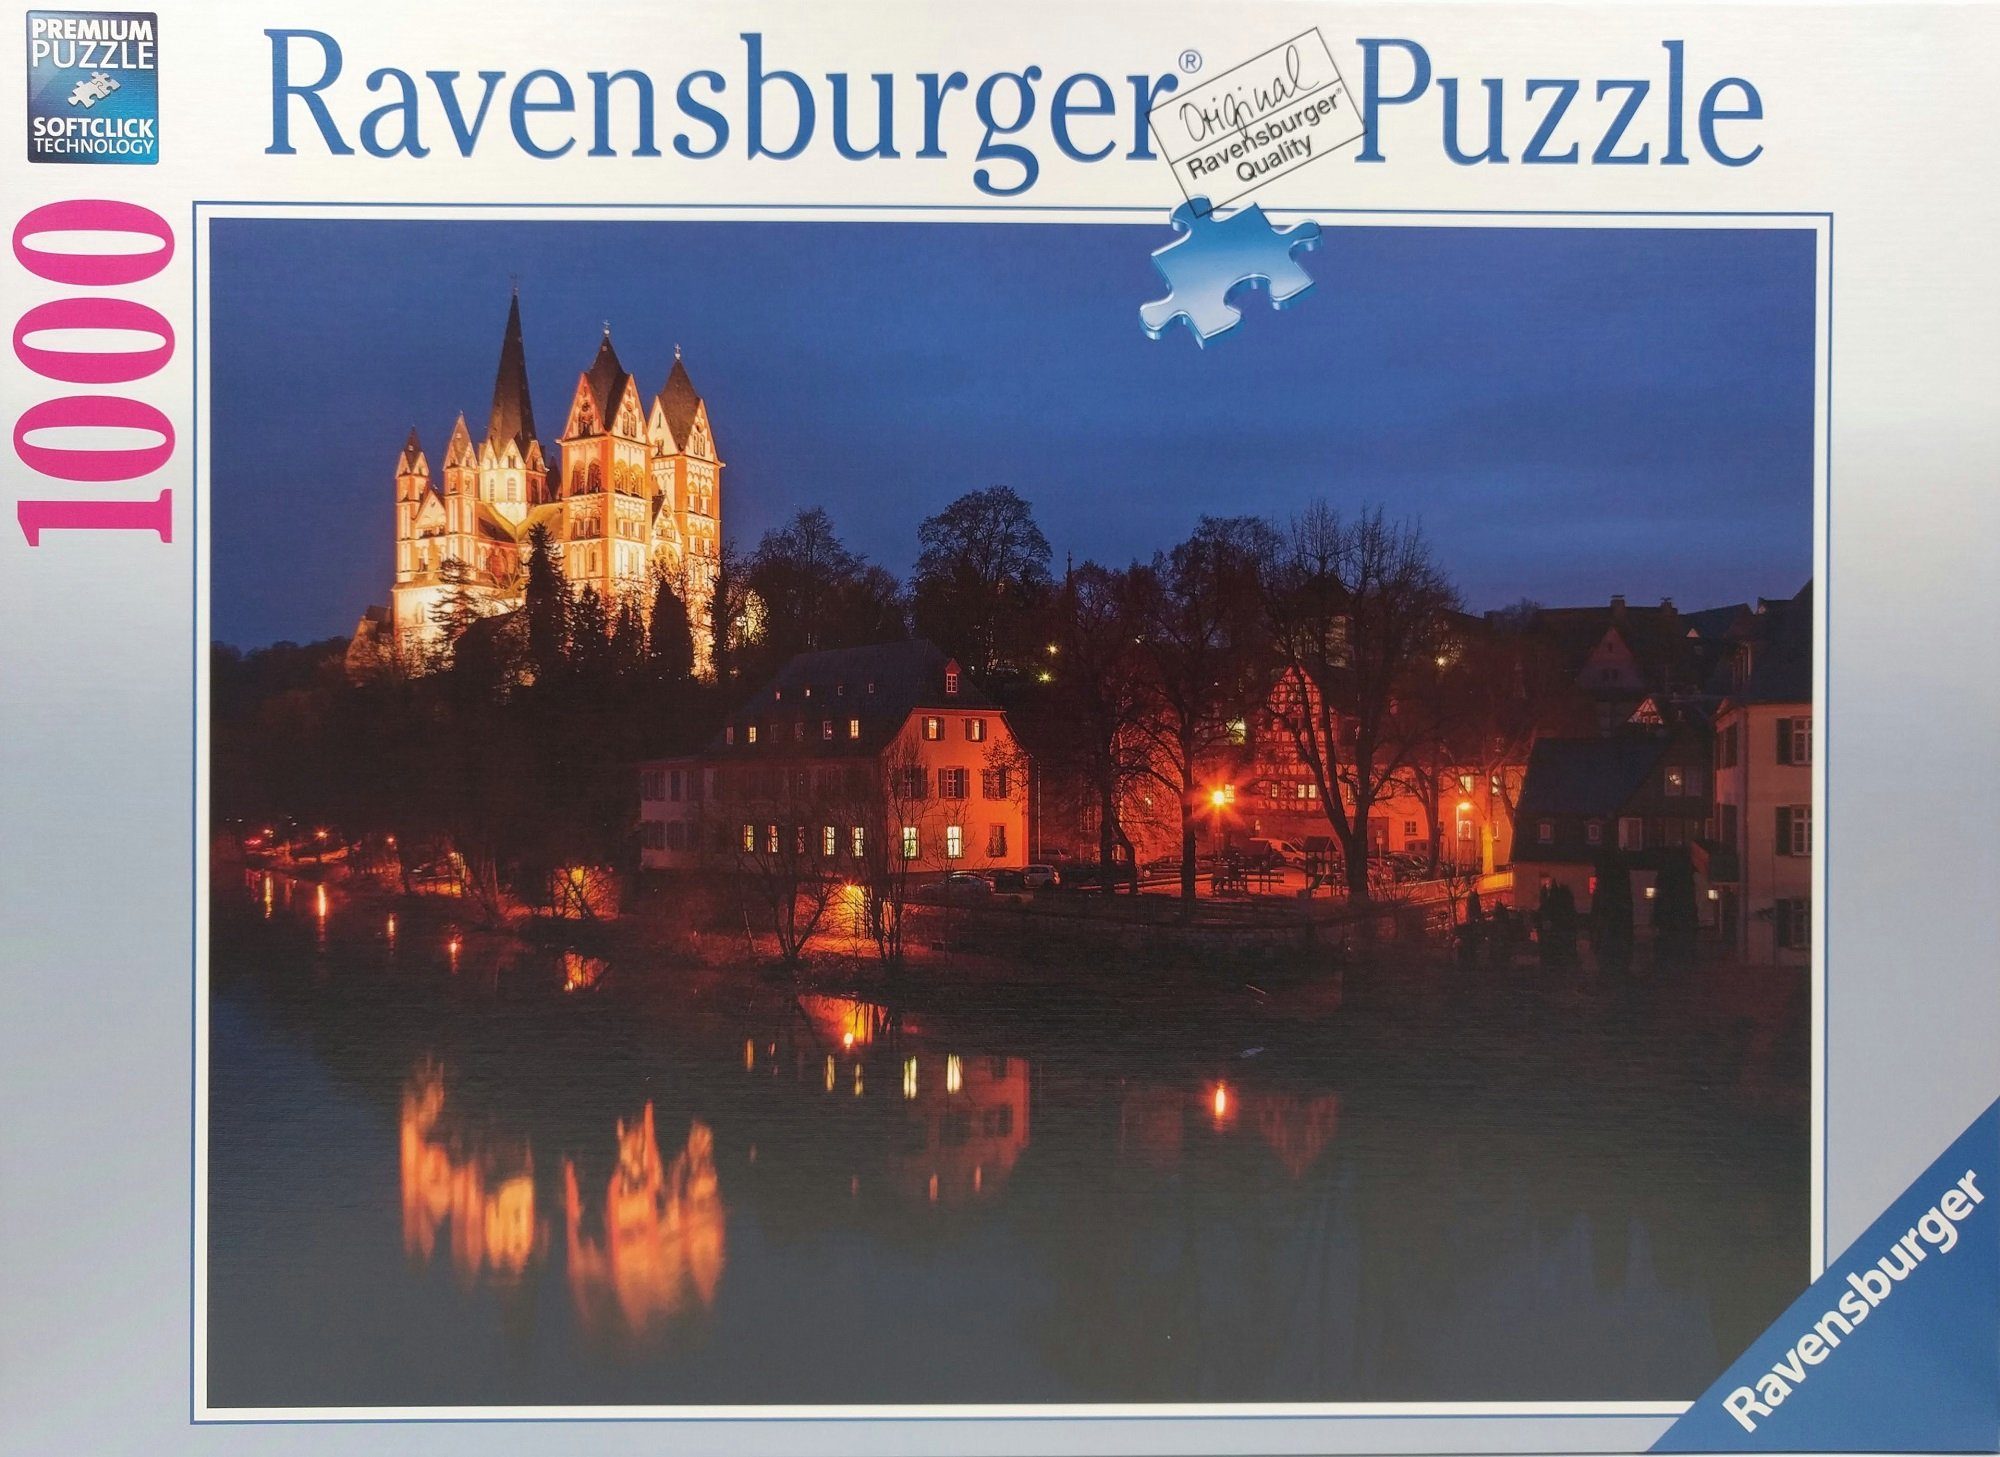 Ravensburger Puzzle Ravensburger - Limburger Dom bei Nacht, 1000 Puzzleteile, 1000 Teile Puzzle